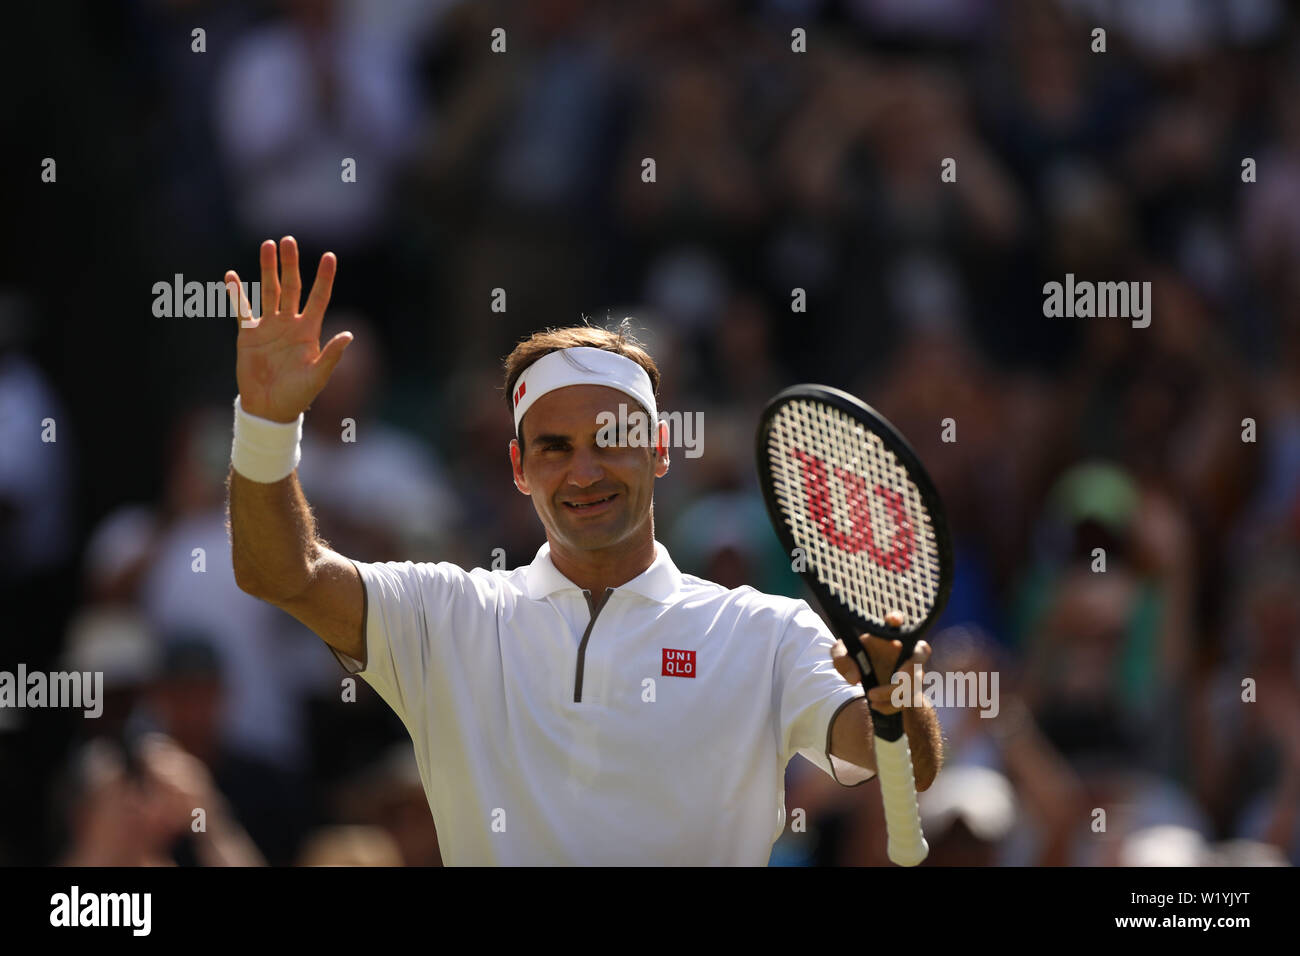 LONDON, ENGLAND - 04. Juli: Roger Federer von der Schweiz in Aktion während seiner Männer singles zweite Runde während der 4. Tag der Meisterschaften - Wimbledon 2019 bei All England Lawn Tennis und Croquet Club am 04. Juli 2019 in London, England. Stockfoto